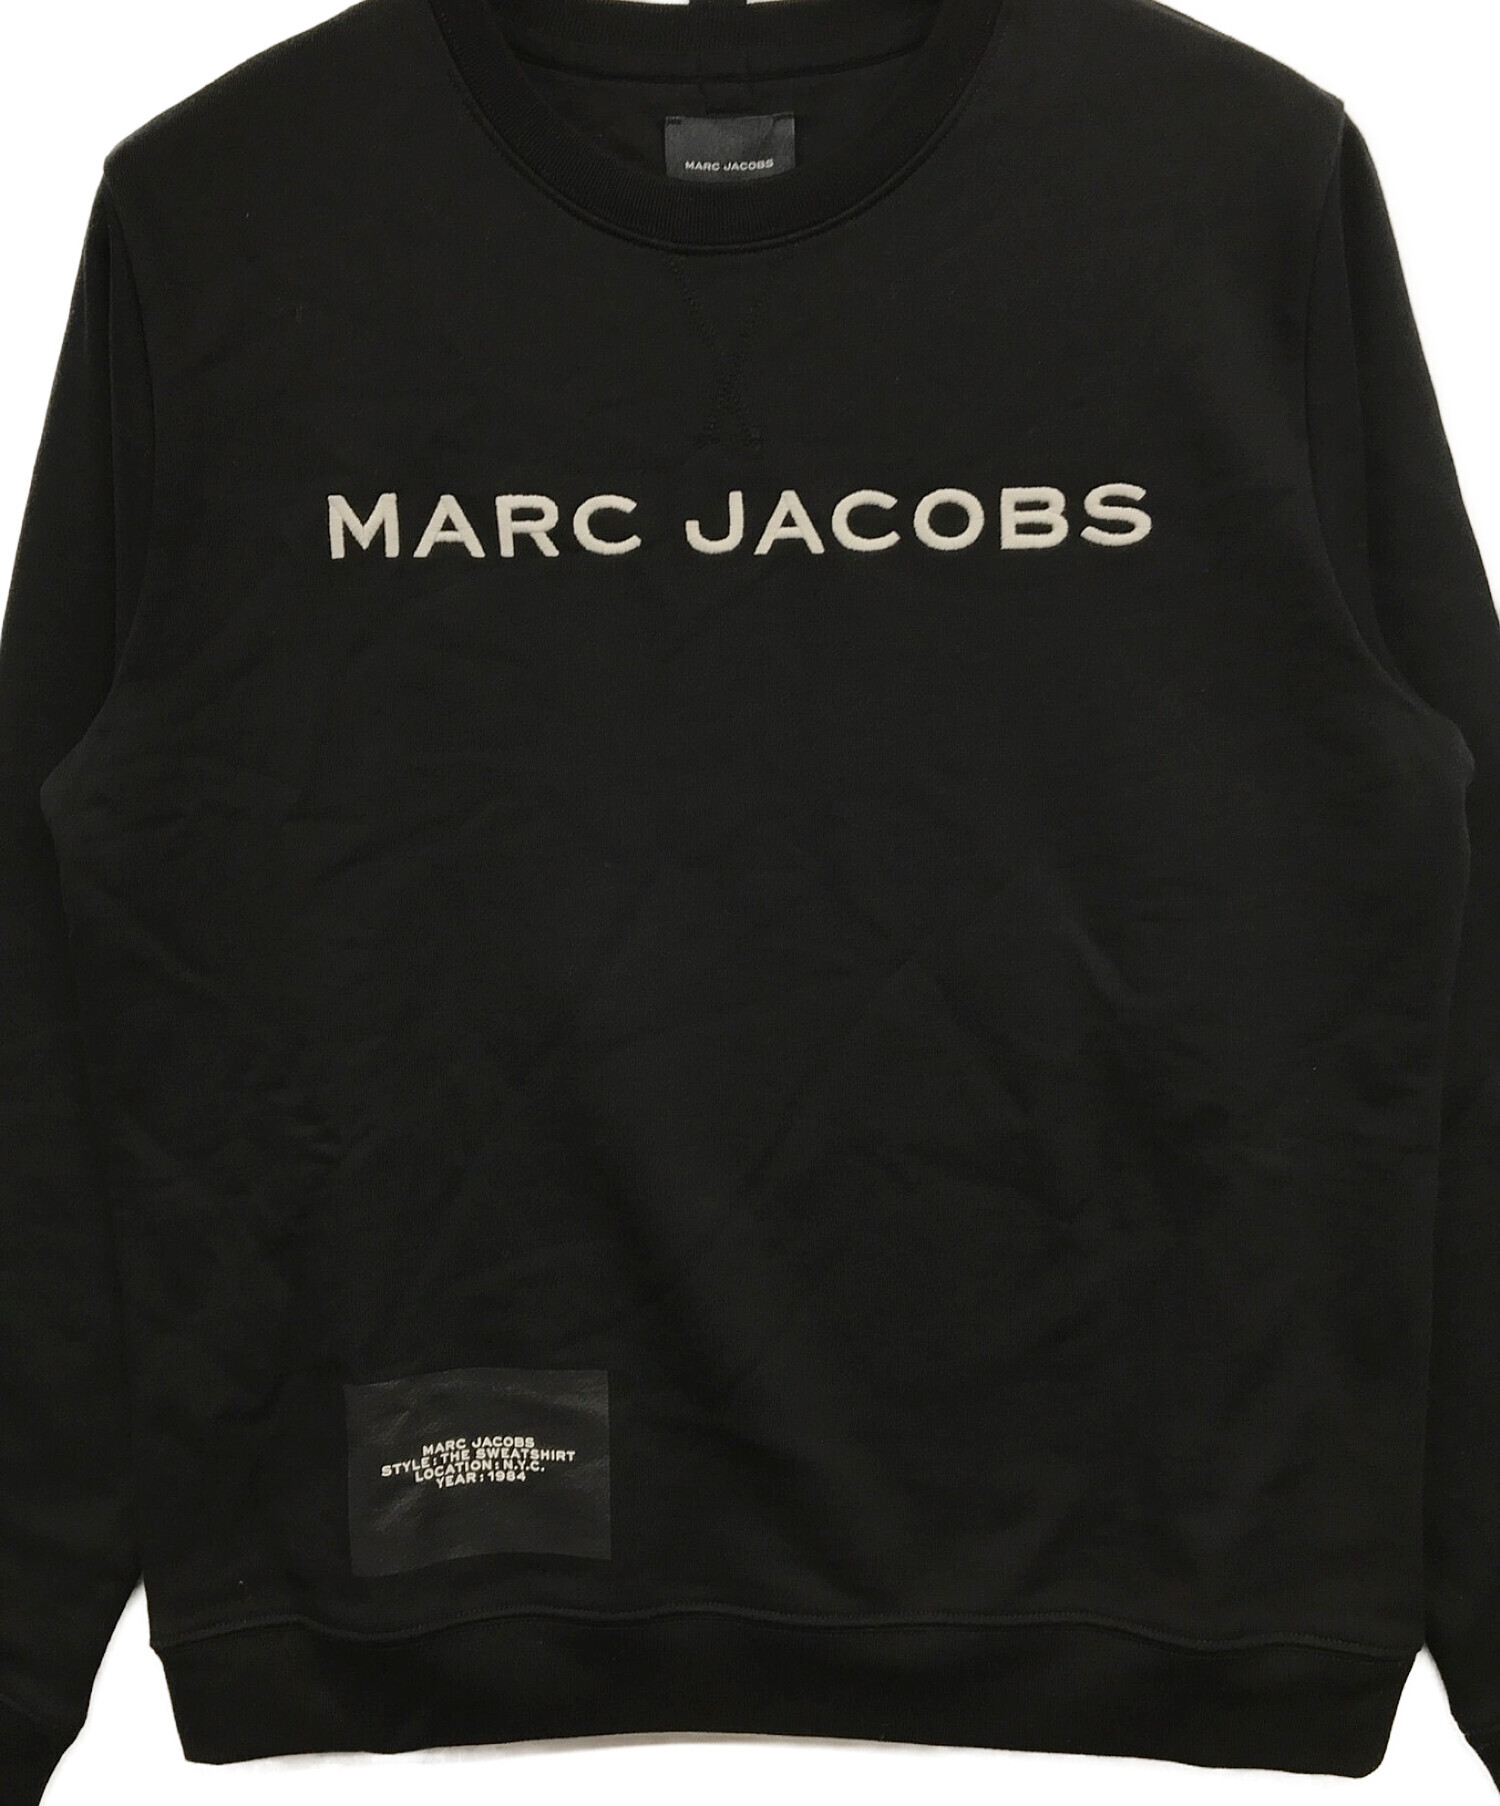 MARC JACOBS (マーク ジェイコブス) ロゴスウェット ブラック サイズ:S